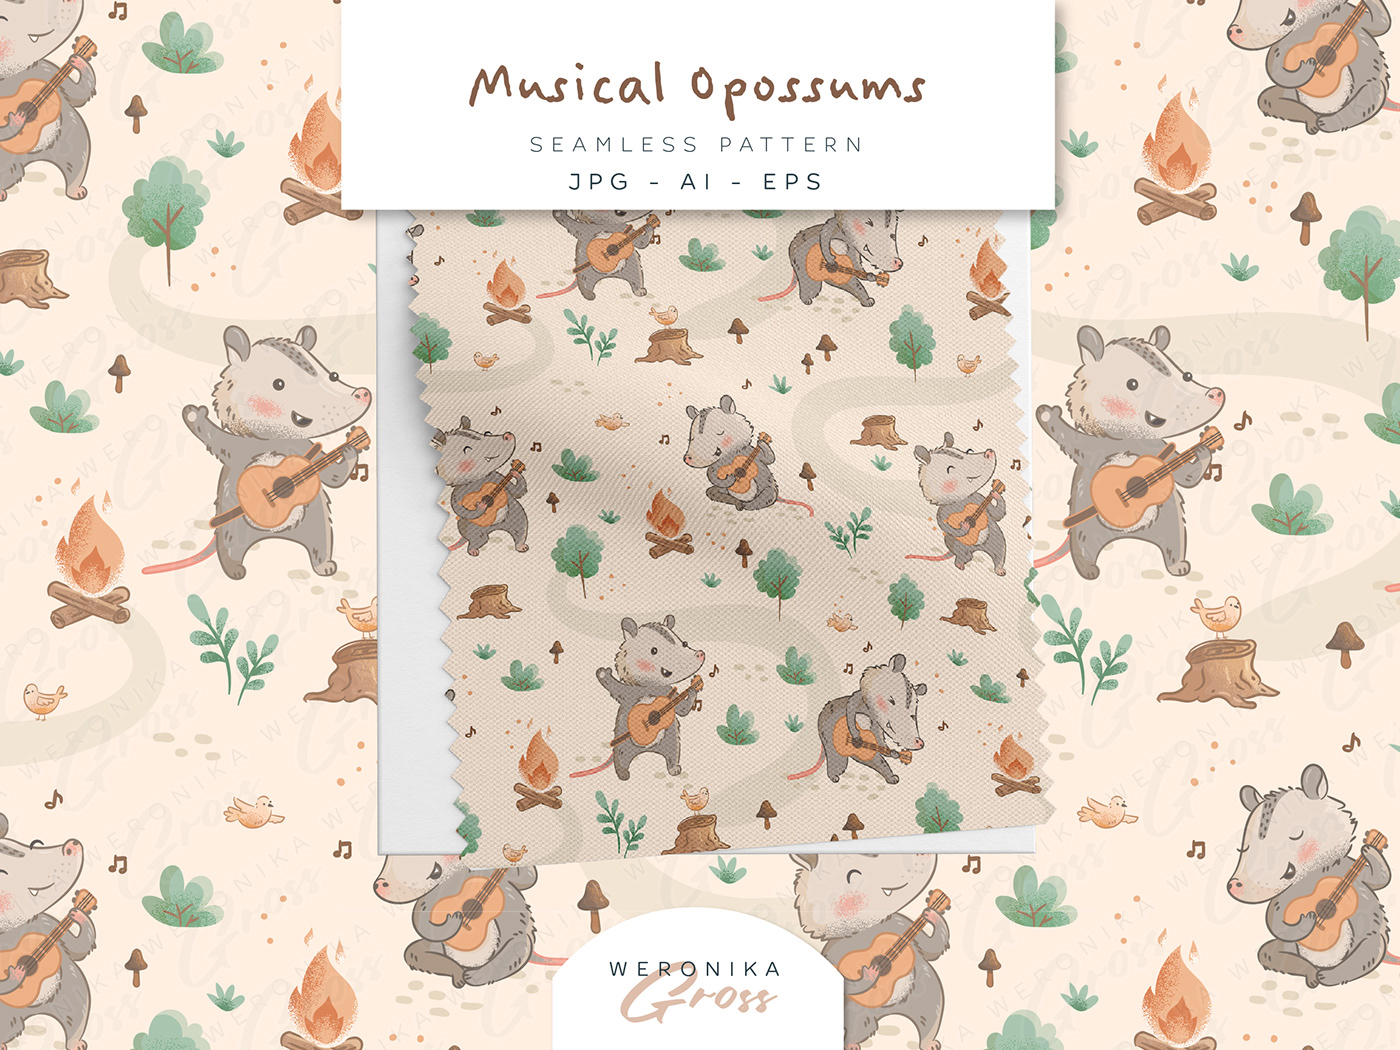 opossum possum children illustration kids illustration babyshower Invitation Birthday Event seamless pattern